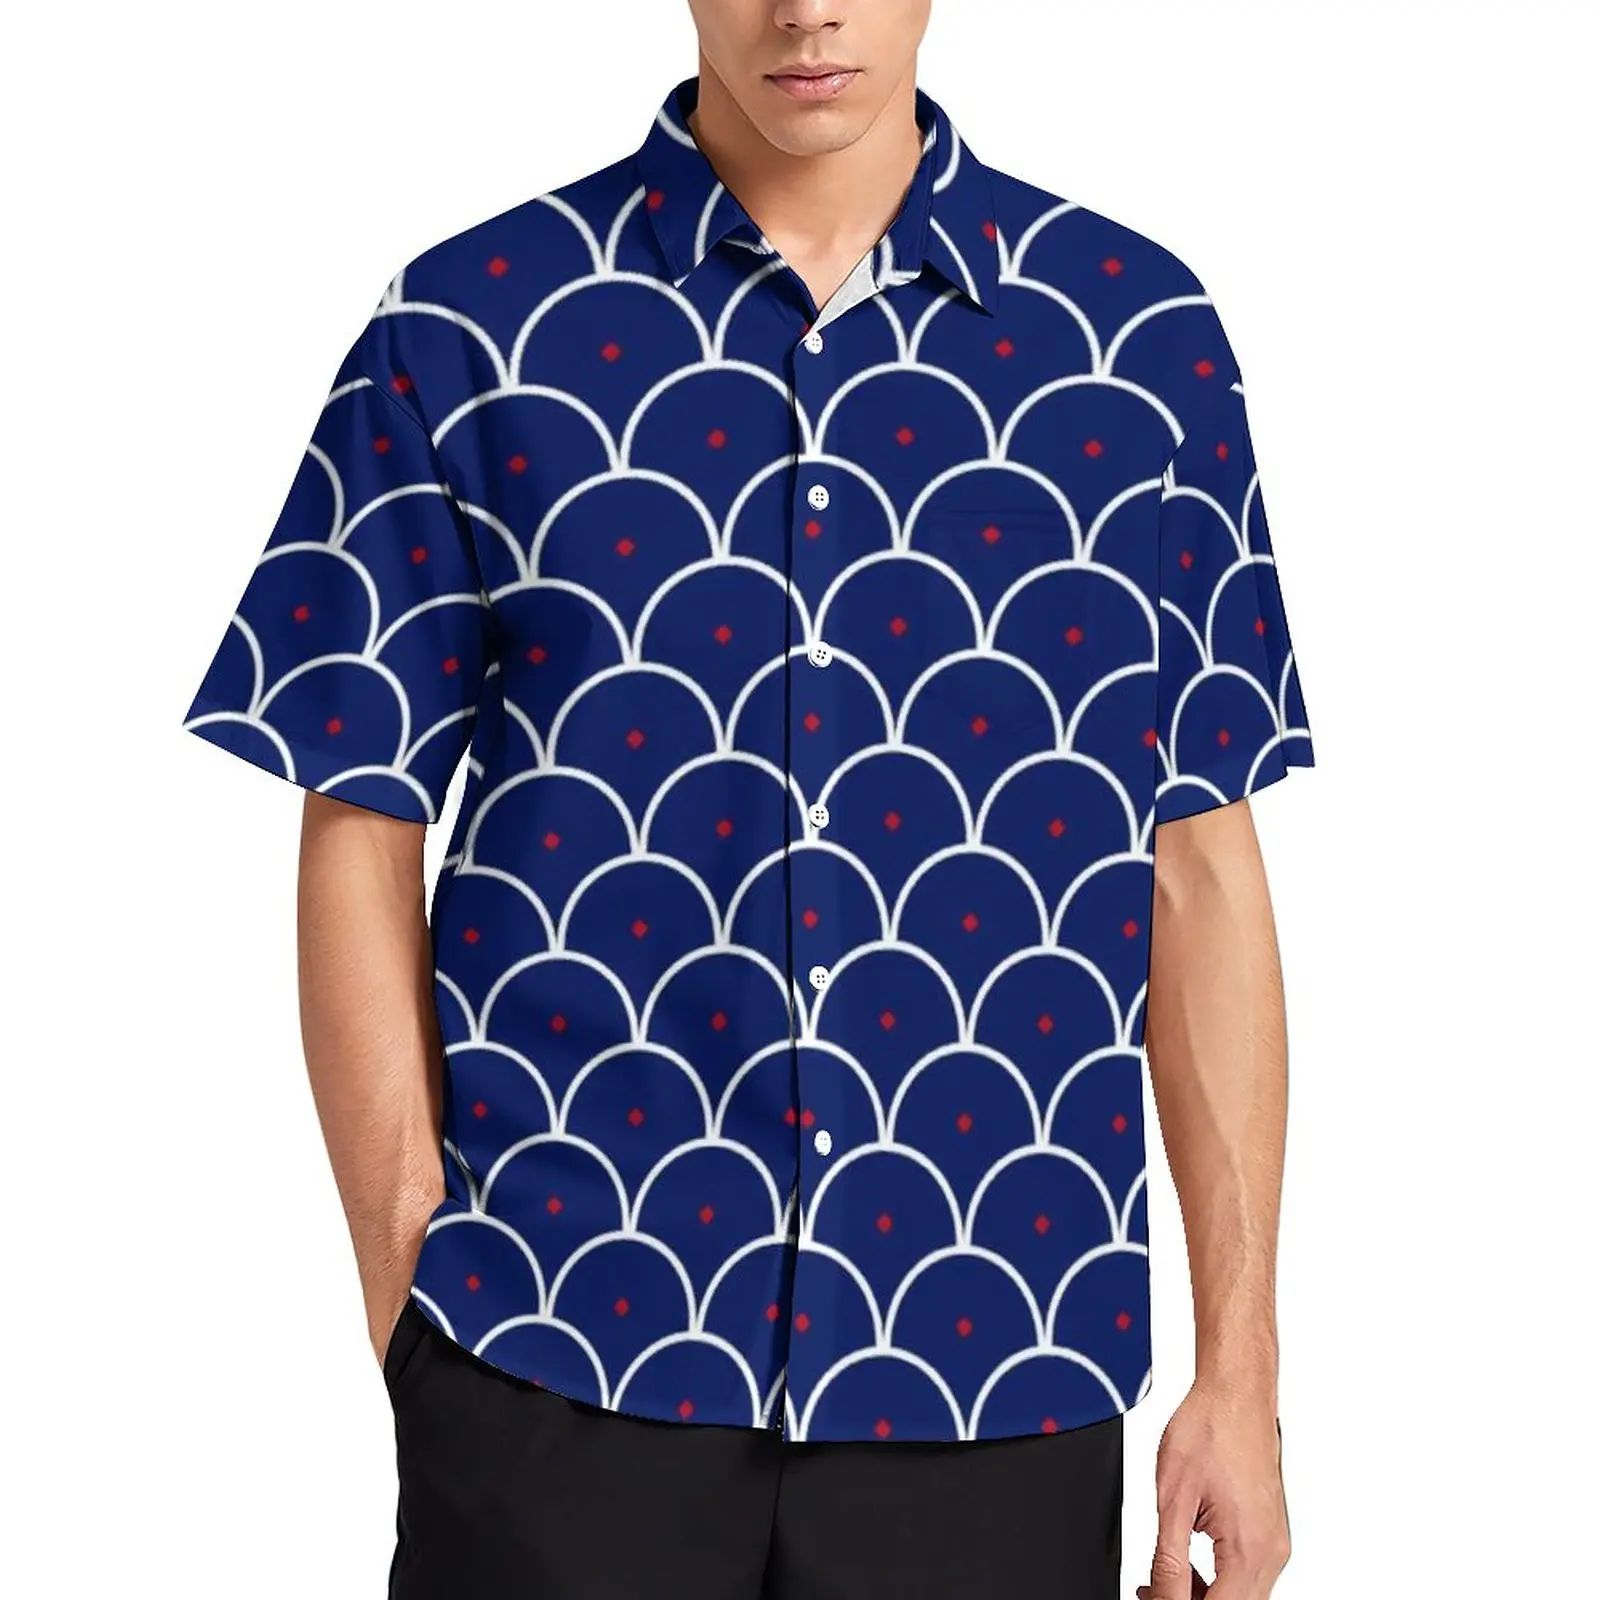 

Пляжная Рубашка голубая волна, сегаиха, повседневные Гавайские рубашки с японским принтом волн, забавные мужские блузки, Одежда большого размера с коротким рукавом